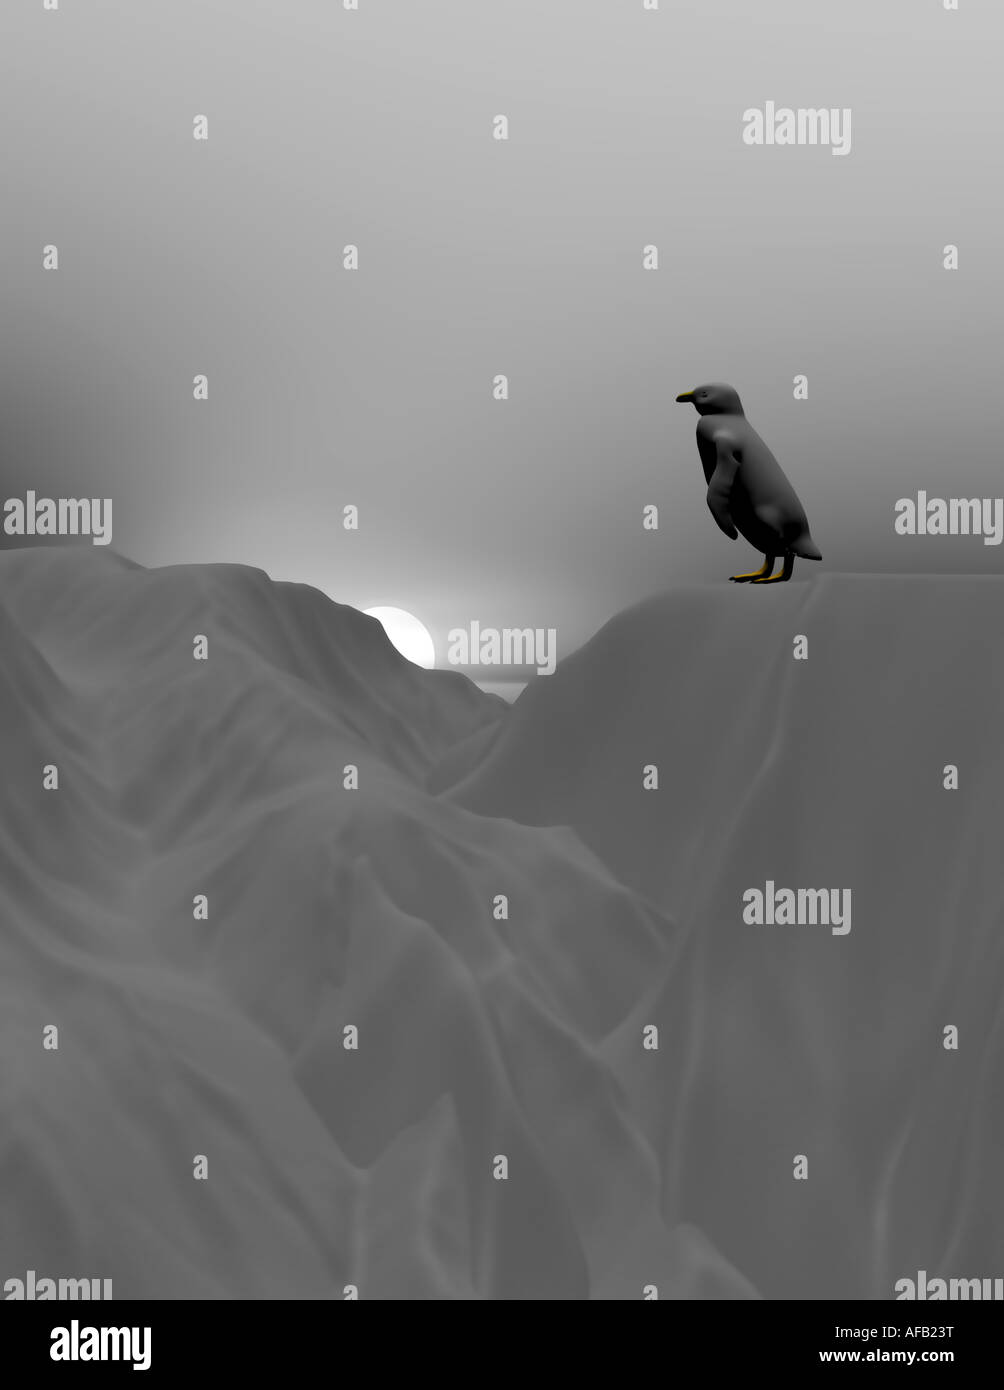 Immagine 3D rappresentata di un pinguino isolato su un iceberg cercando di decidere se passare al successivo ridge Foto Stock